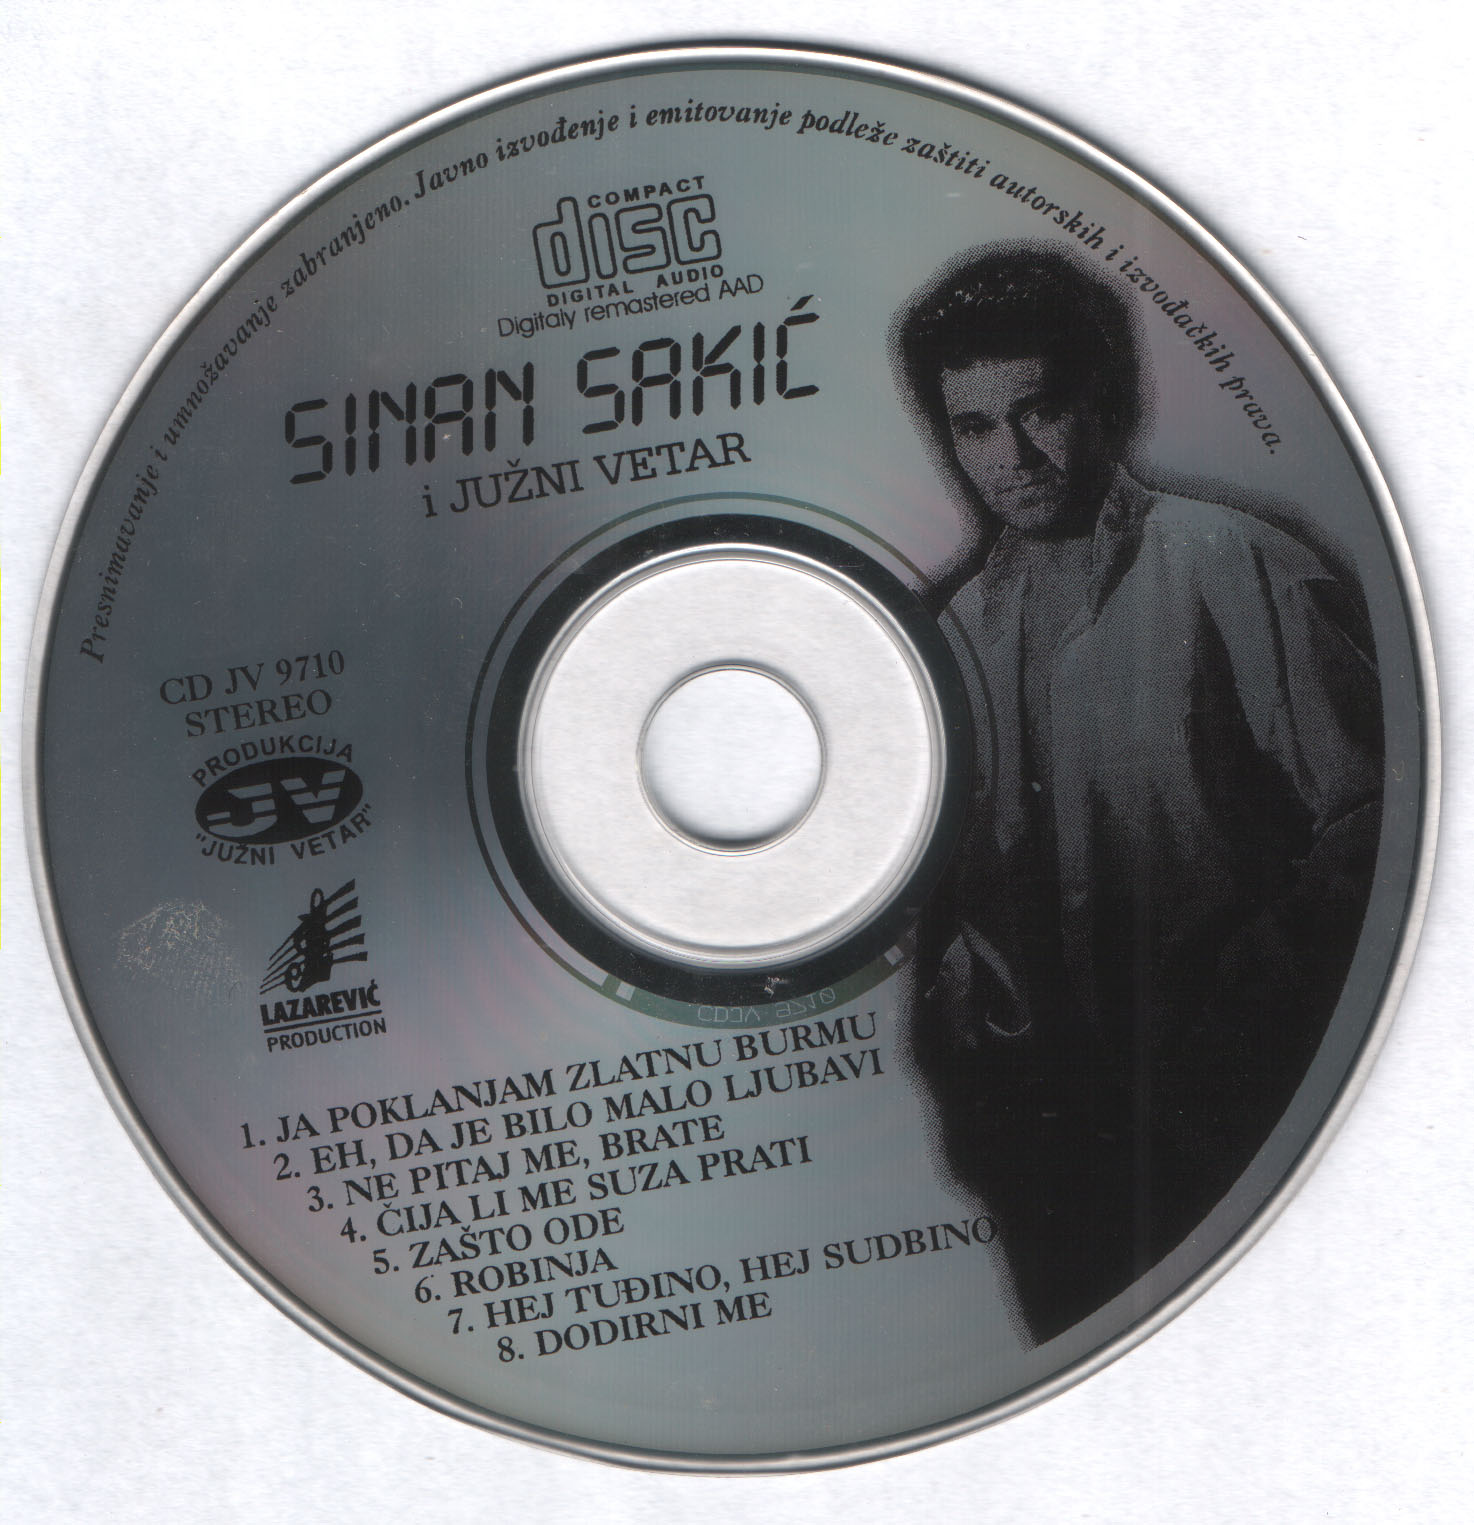 Sinan Sakic 1997 Cd